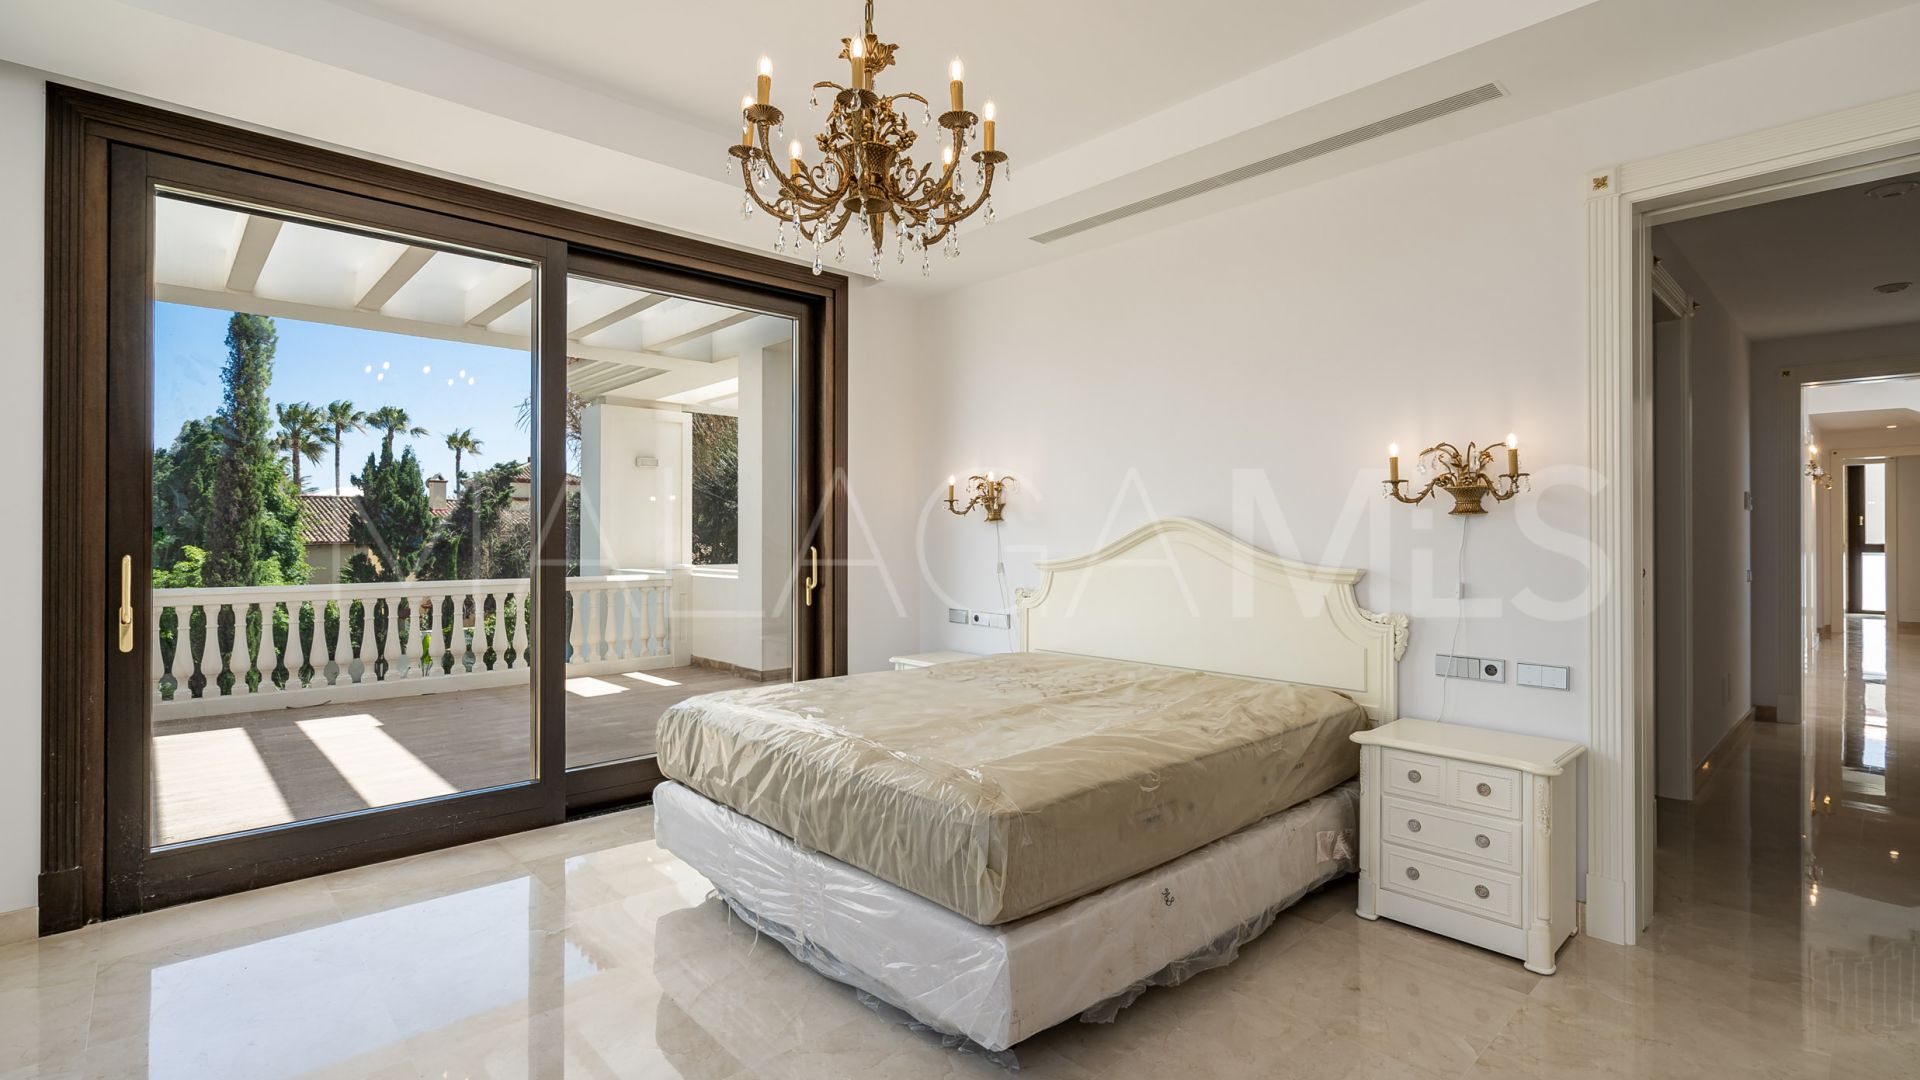 Buy Casasola 6 bedrooms villa